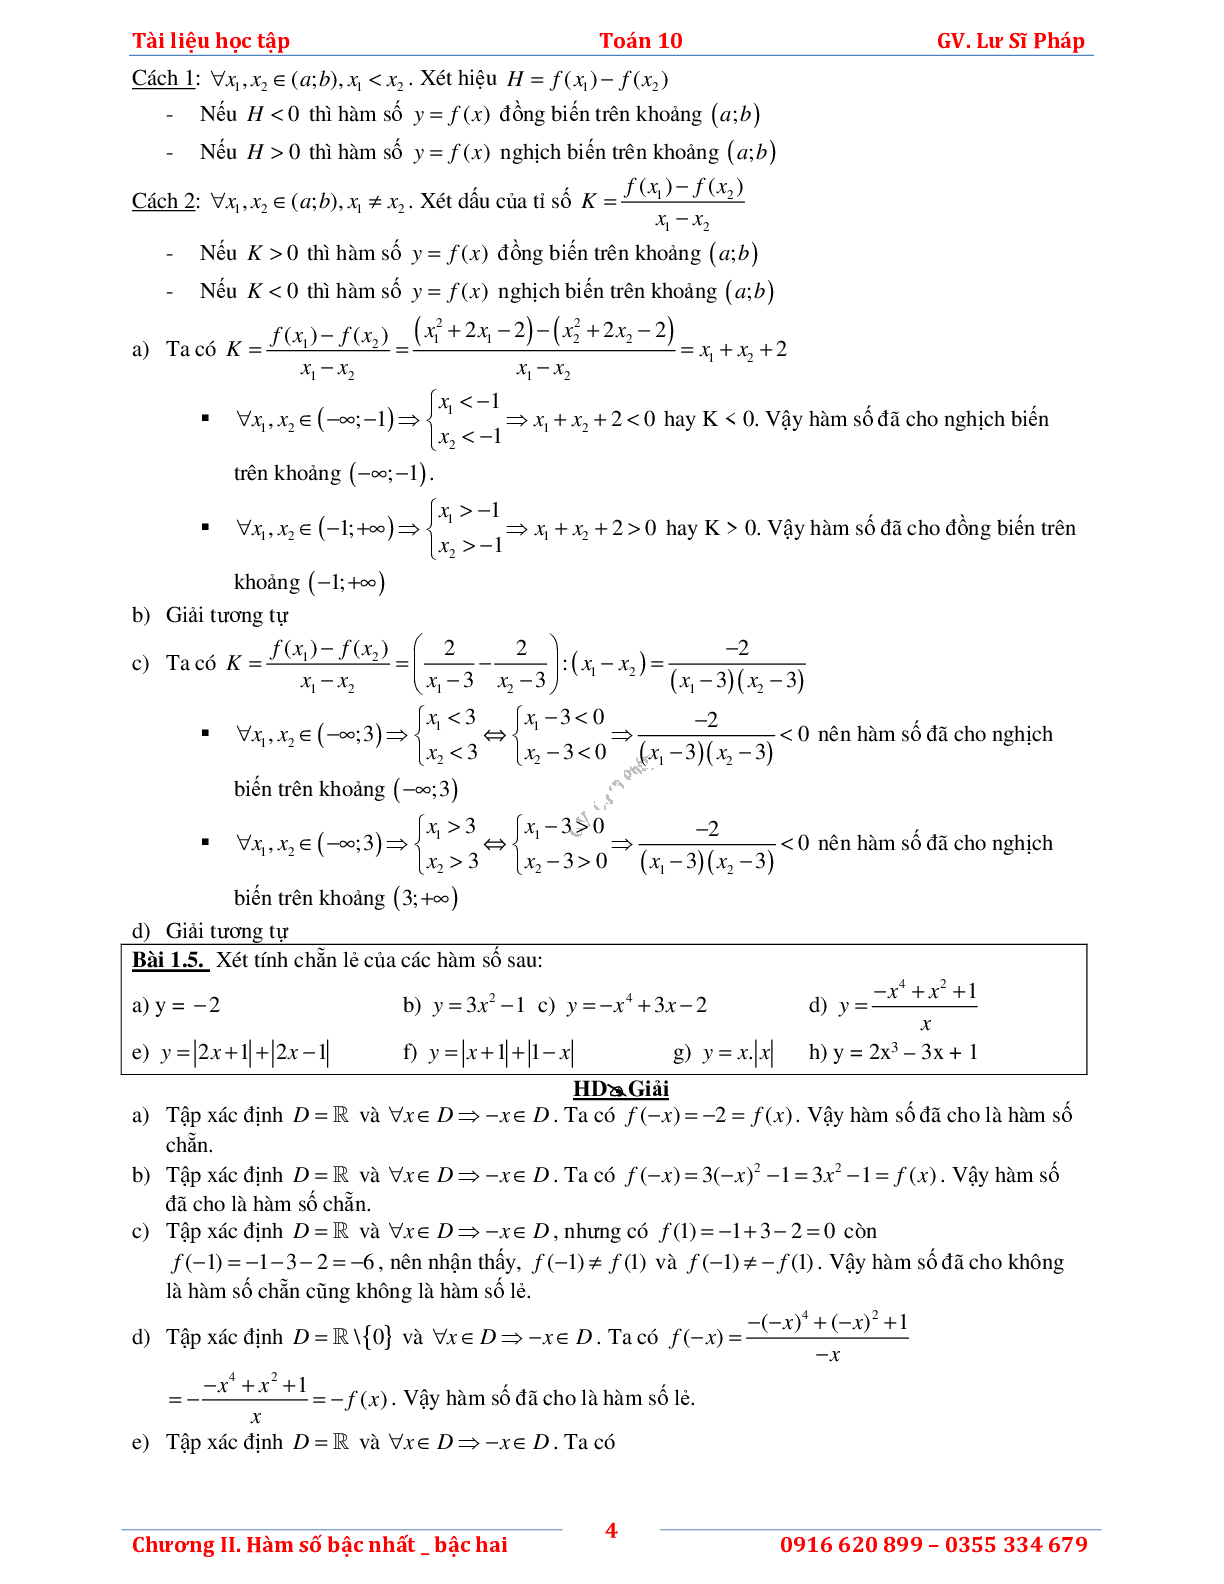 Tài liệu học tập hàm số bậc nhất và bậc hai (trang 8)